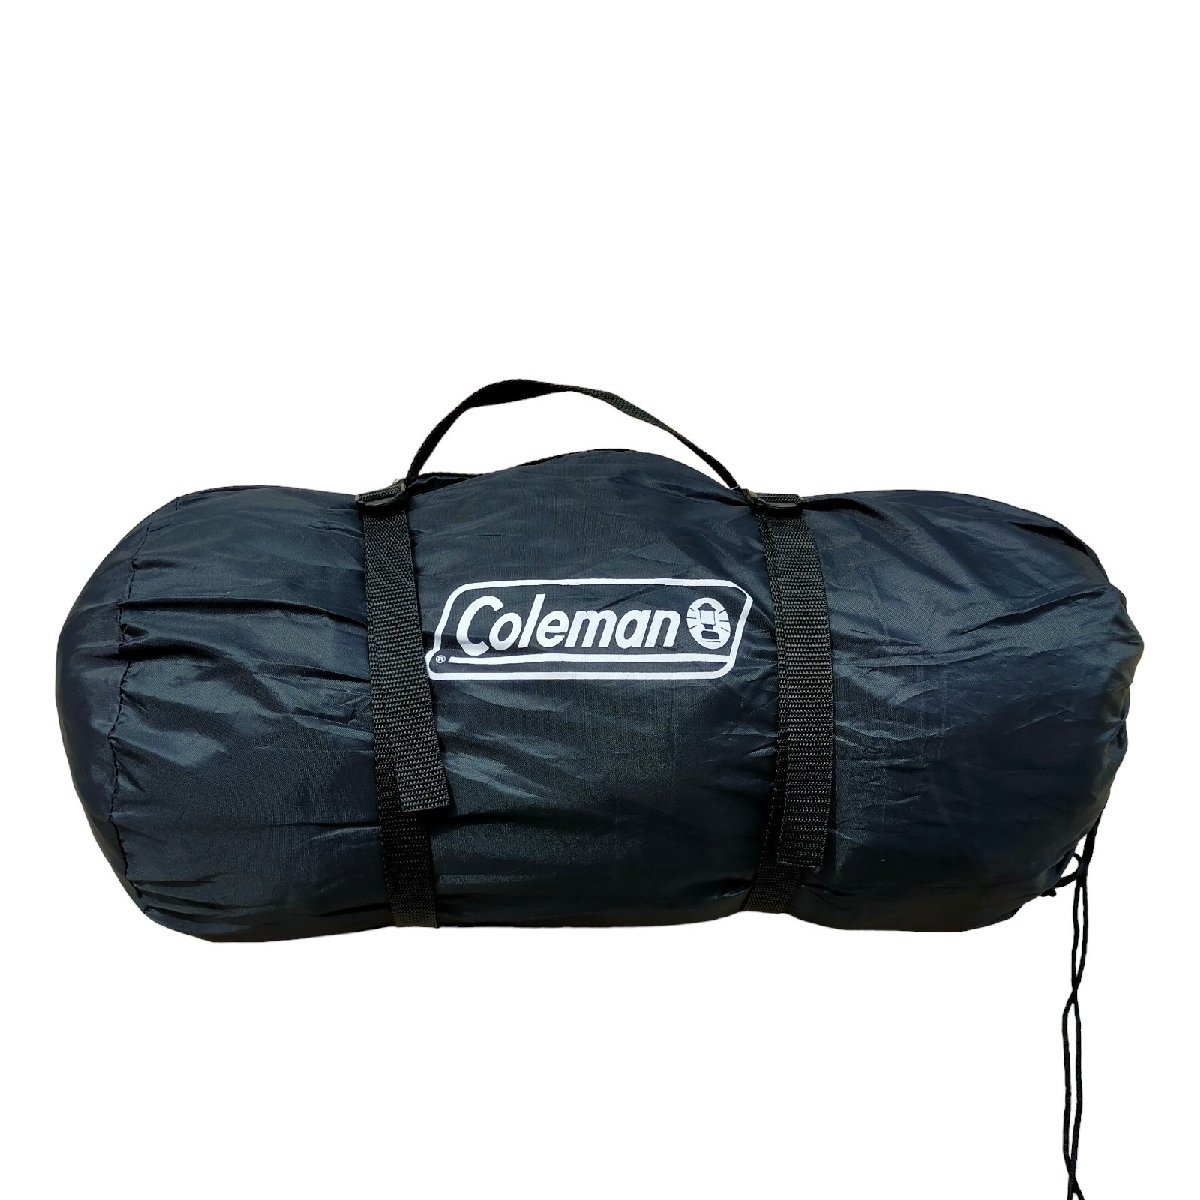 ◆中古品◆コールマン Coleman テント ツーリングドーム LX 2~3人用 グリーン系 キャンプ アウトドア R38369NF